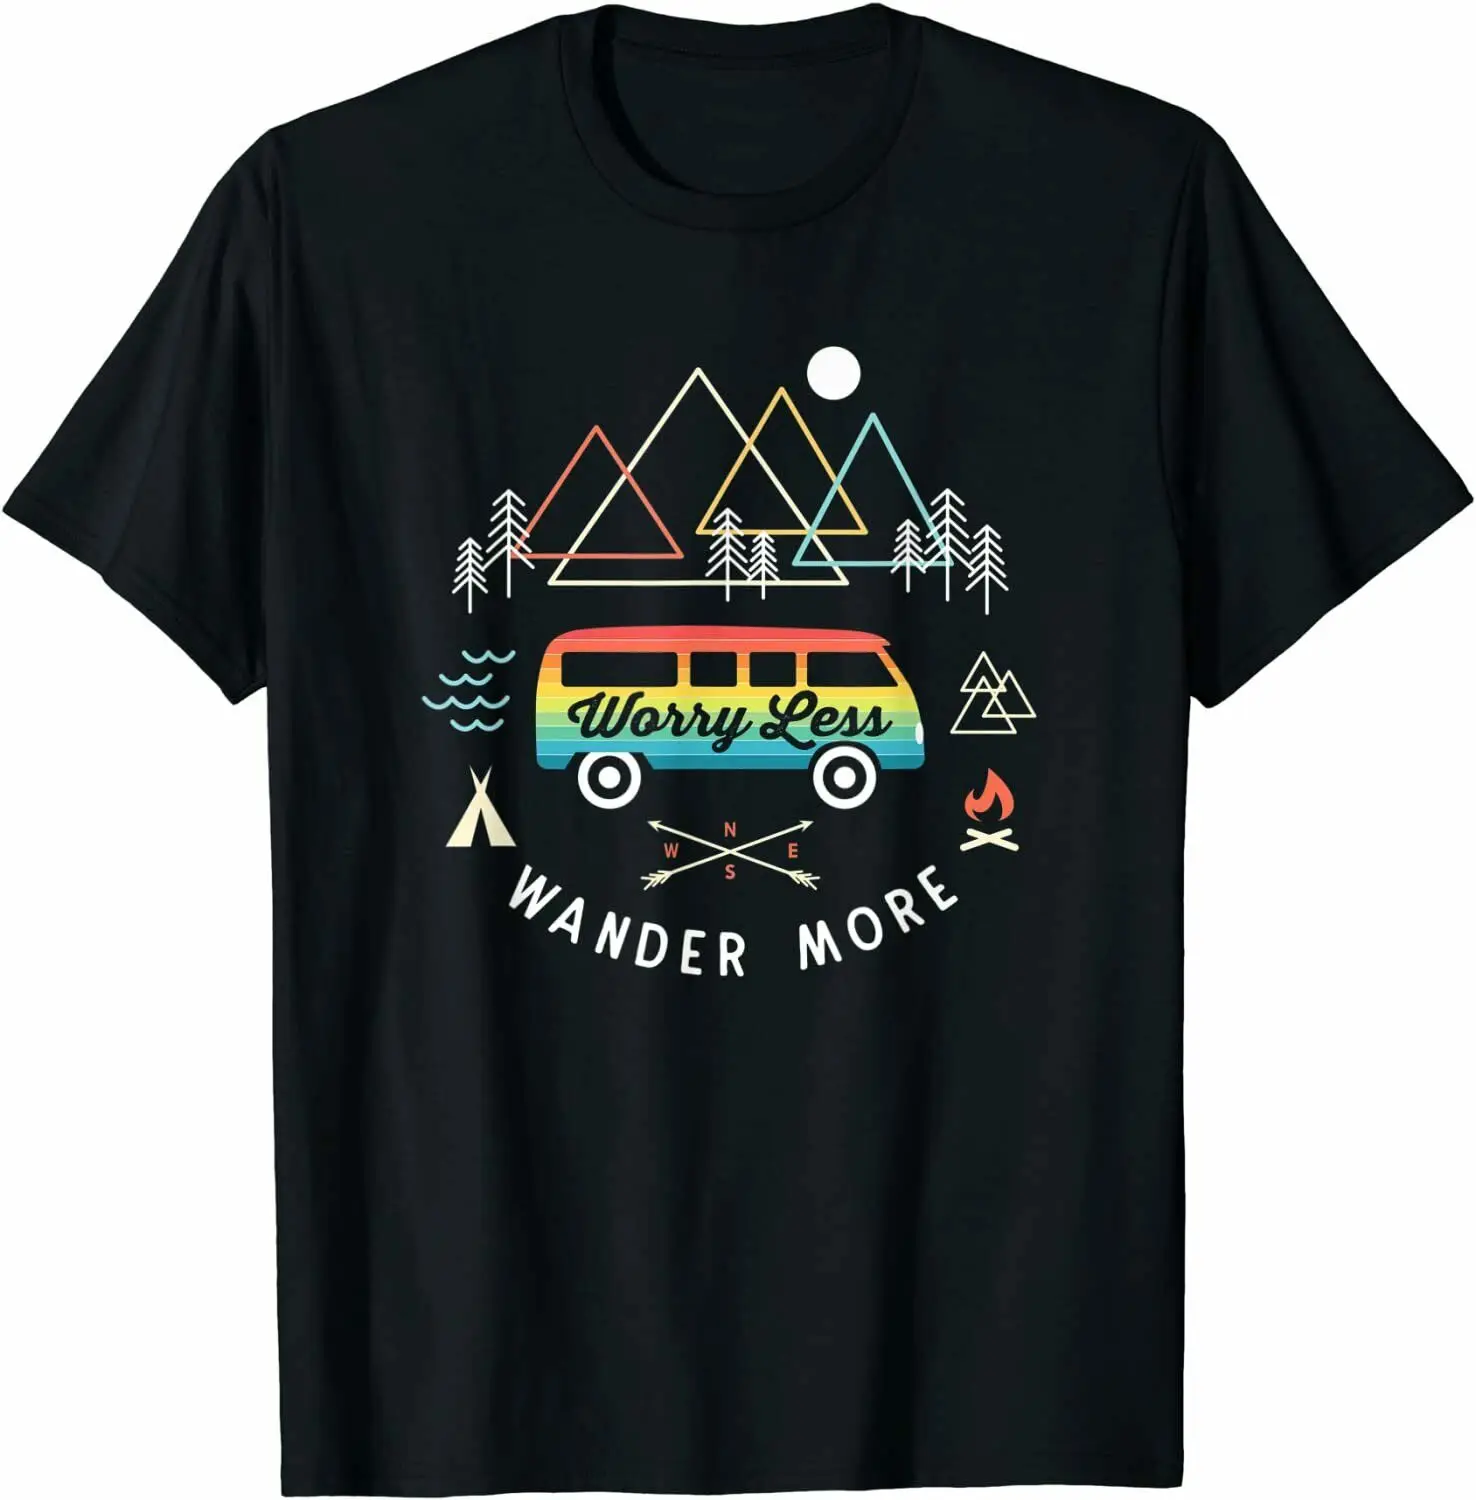 

Camping Retro Camper Van Vintage Sunset Mountains Van Life O - Collar Four - Season Printing Versatile T-shirt Short Sleeves